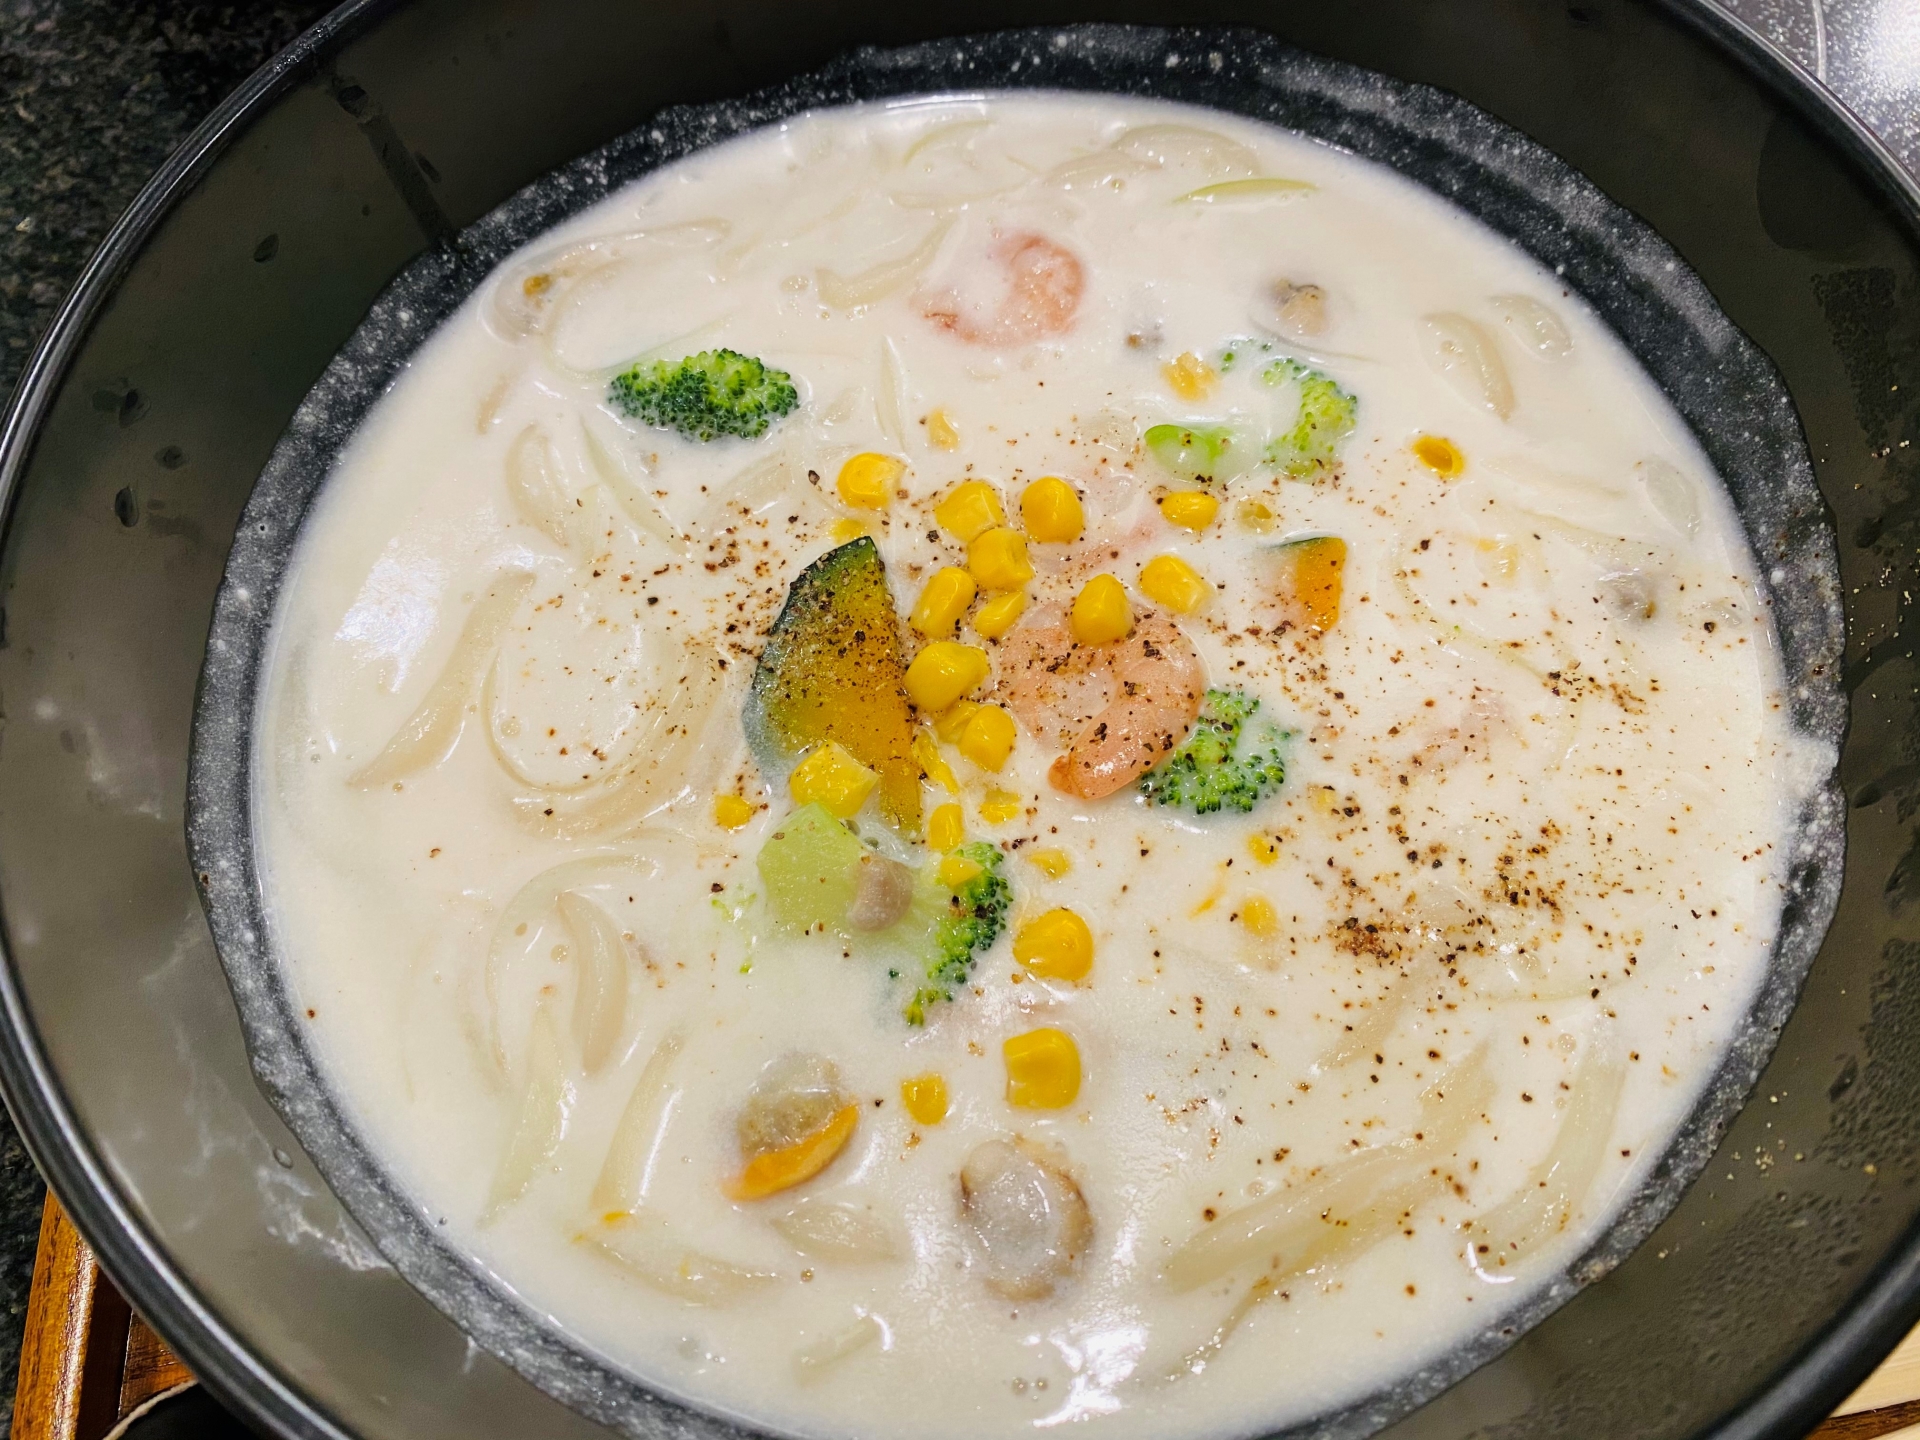 おは土 カルボナーラ豆腐スープのレシピ おはよう朝日です おは朝 2月13日 きなこのレビューブログ